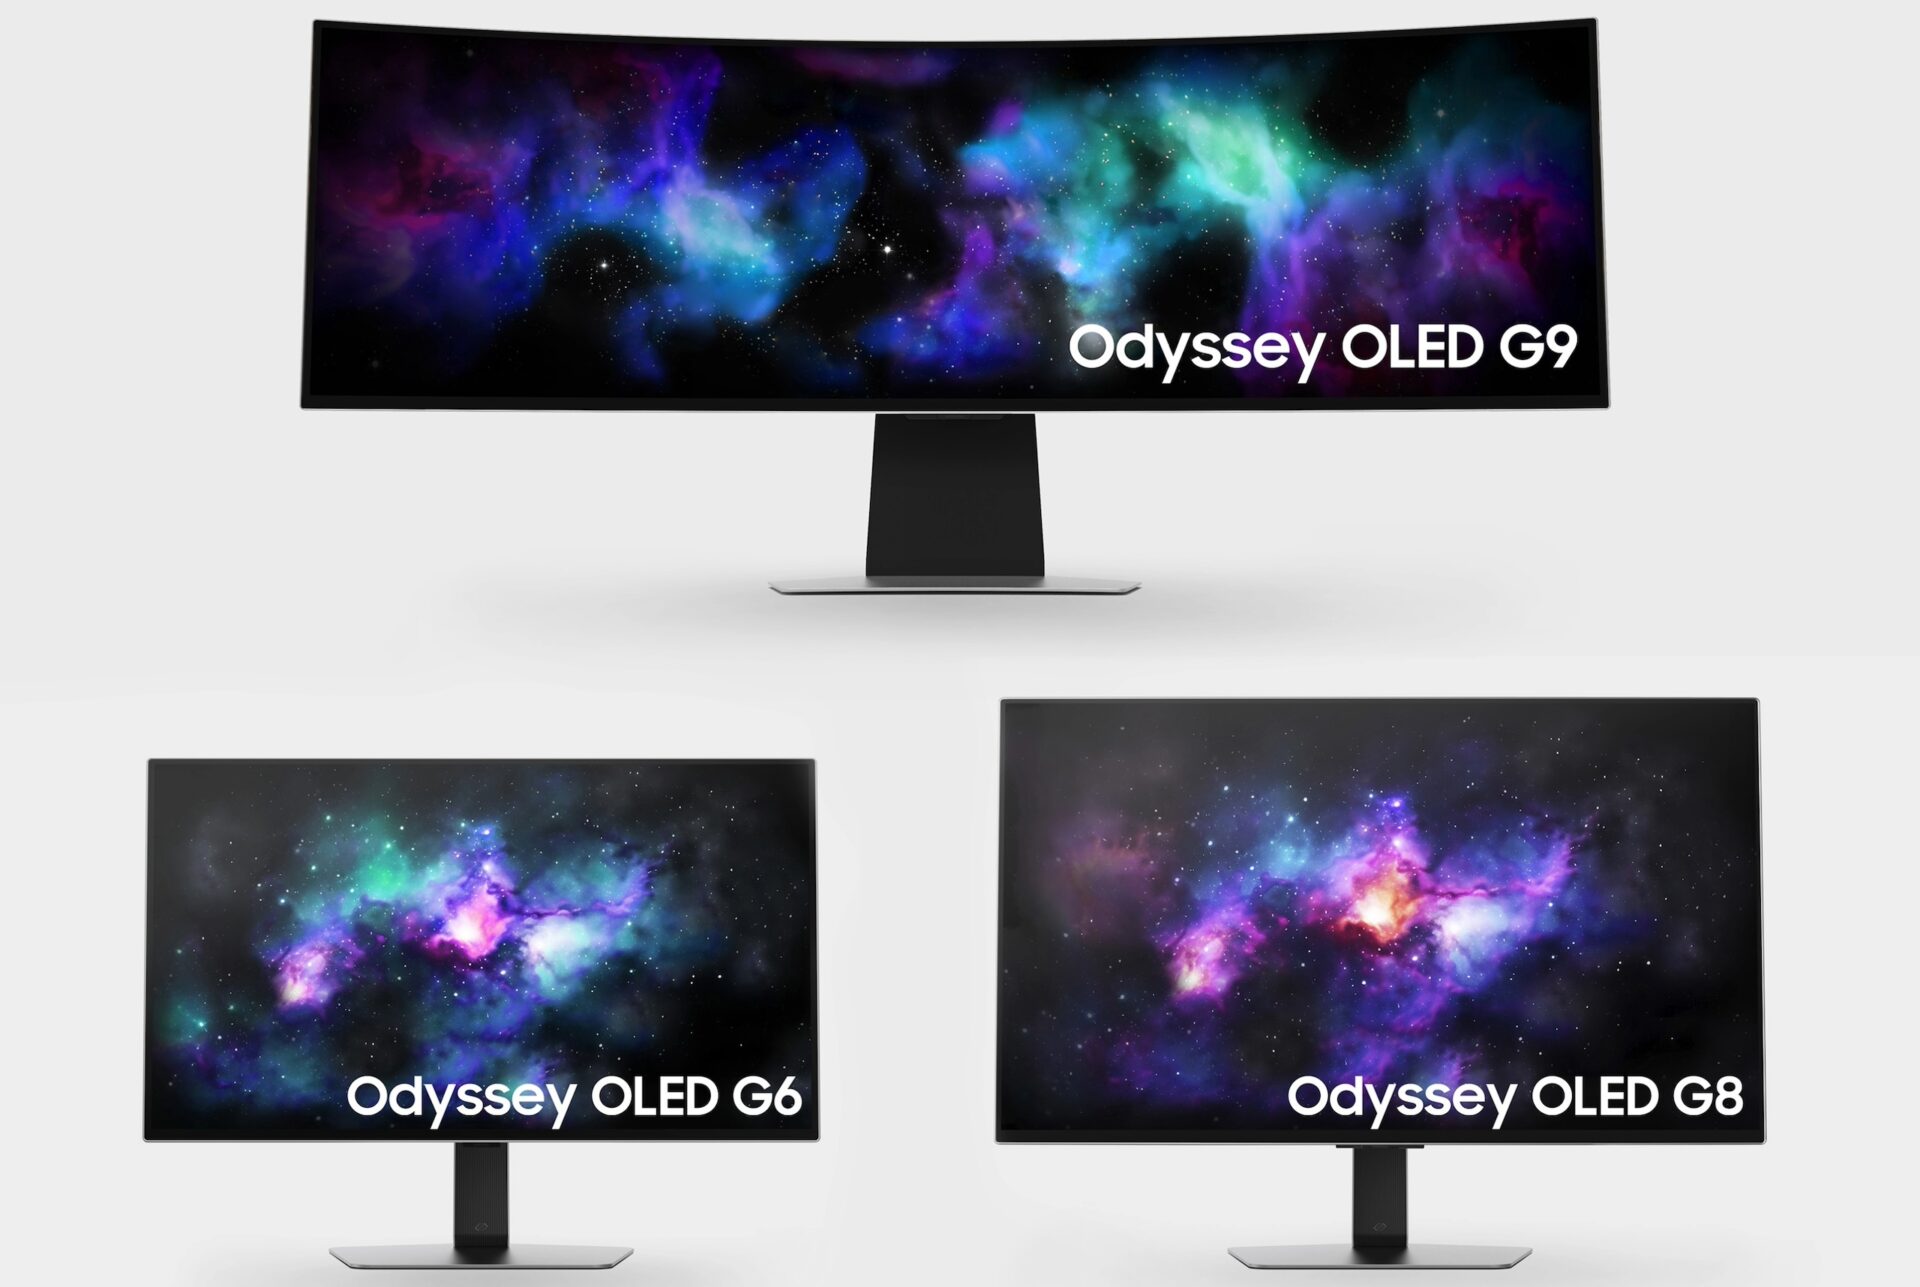 Samsung Odyssey gamingskjerm-serien får nye modeller